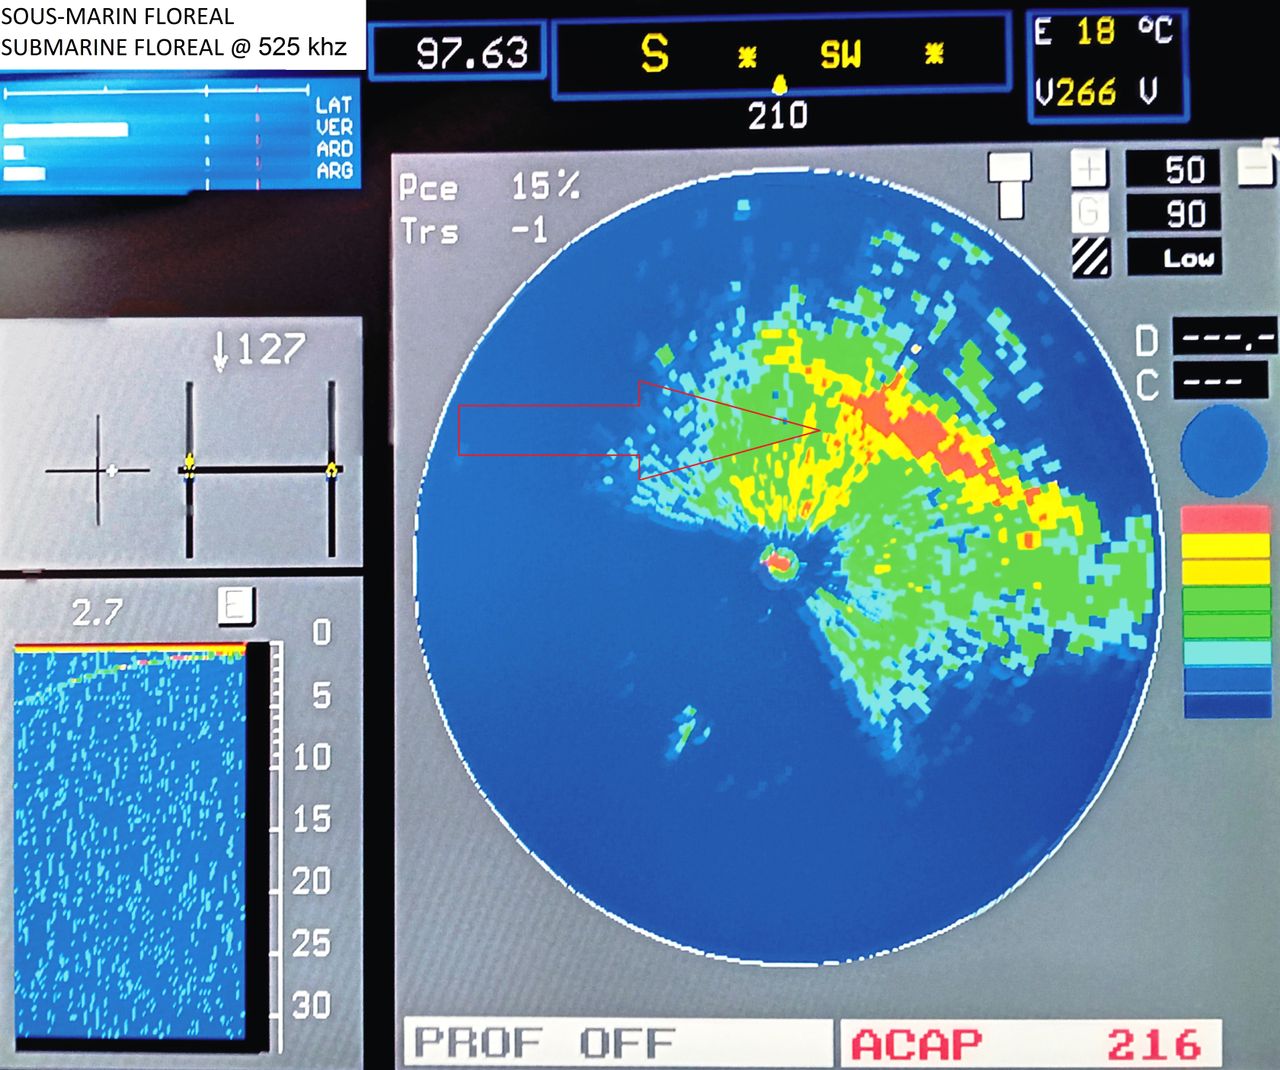 Ηχοβολιστική απεικόνιση του ναυαγίου με Imaging Sonar στα 525 khz που φέρει το υποβρύχιο τηλεκατευθυνόμενο όχημα ROV μαζί του. Διακρίνεται το ναυάγιο του Floreal σε βάθος 97,6 μέτρα.